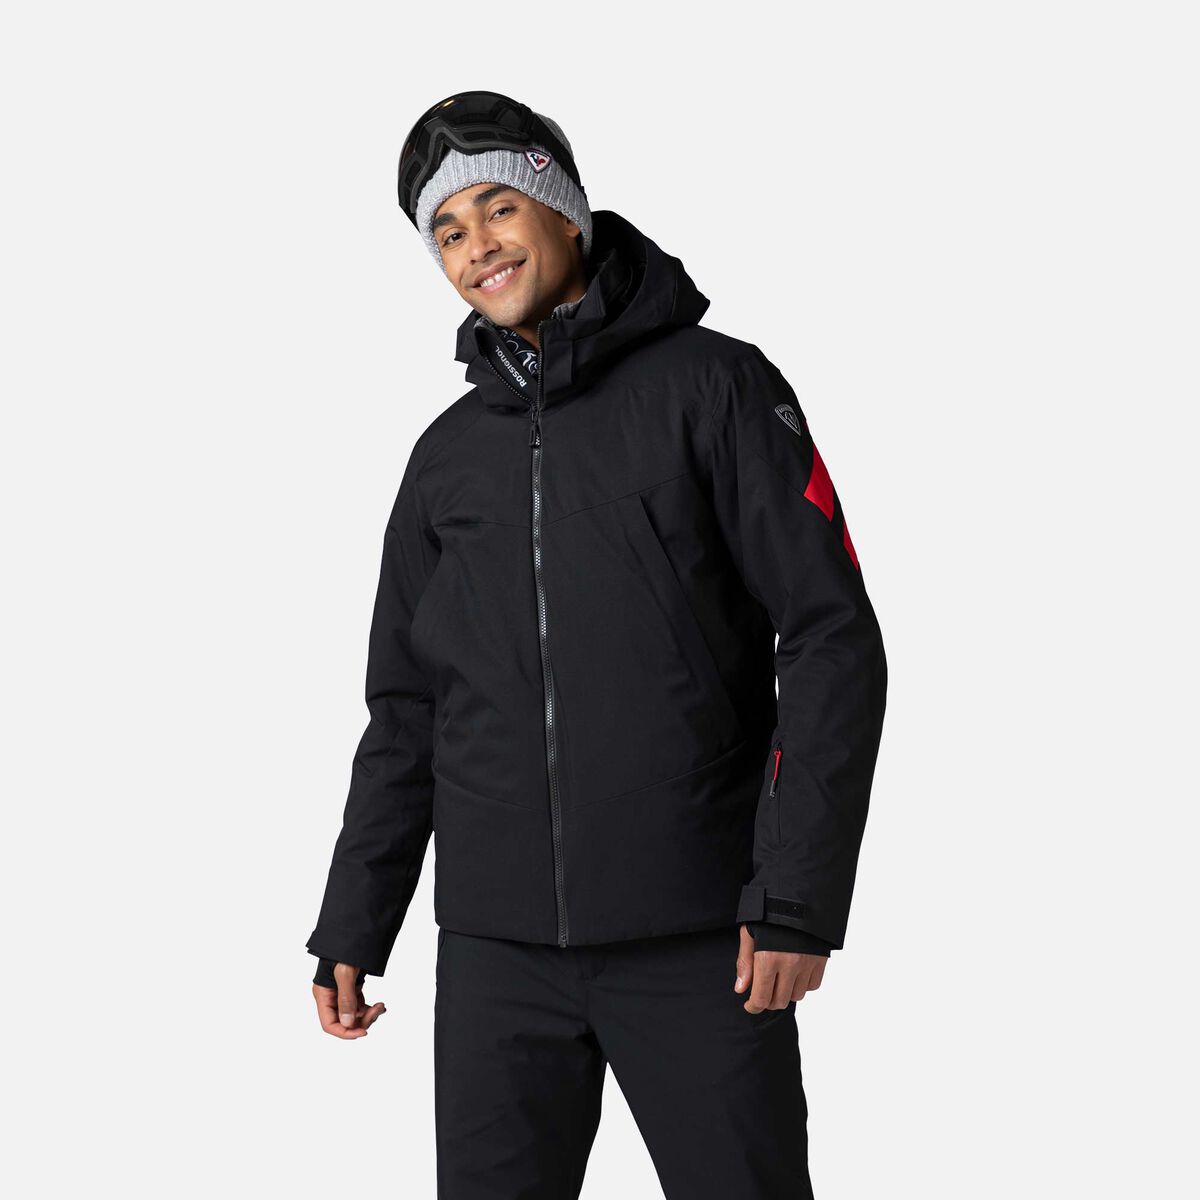 ROSSIGNOL SKIWEAR Rossignol AILE - Chaqueta de esquí hombre black/black -  Private Sport Shop